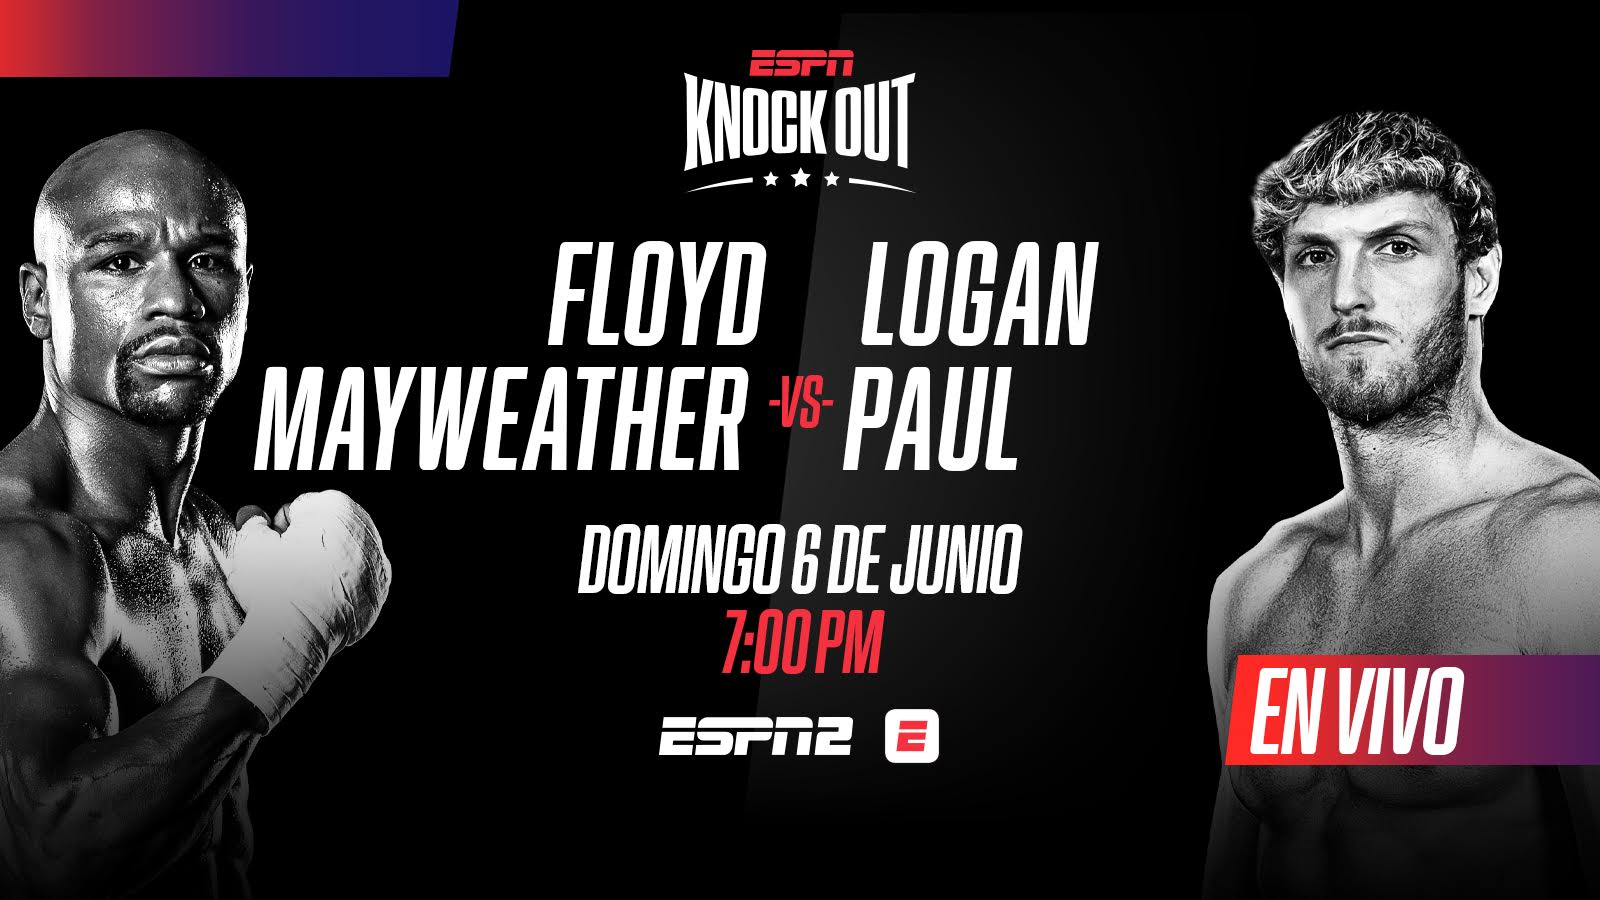 ¿Cómo ver la pelea de exhibición entre Floyd Mayweather vs el youtuber Logan Paul?